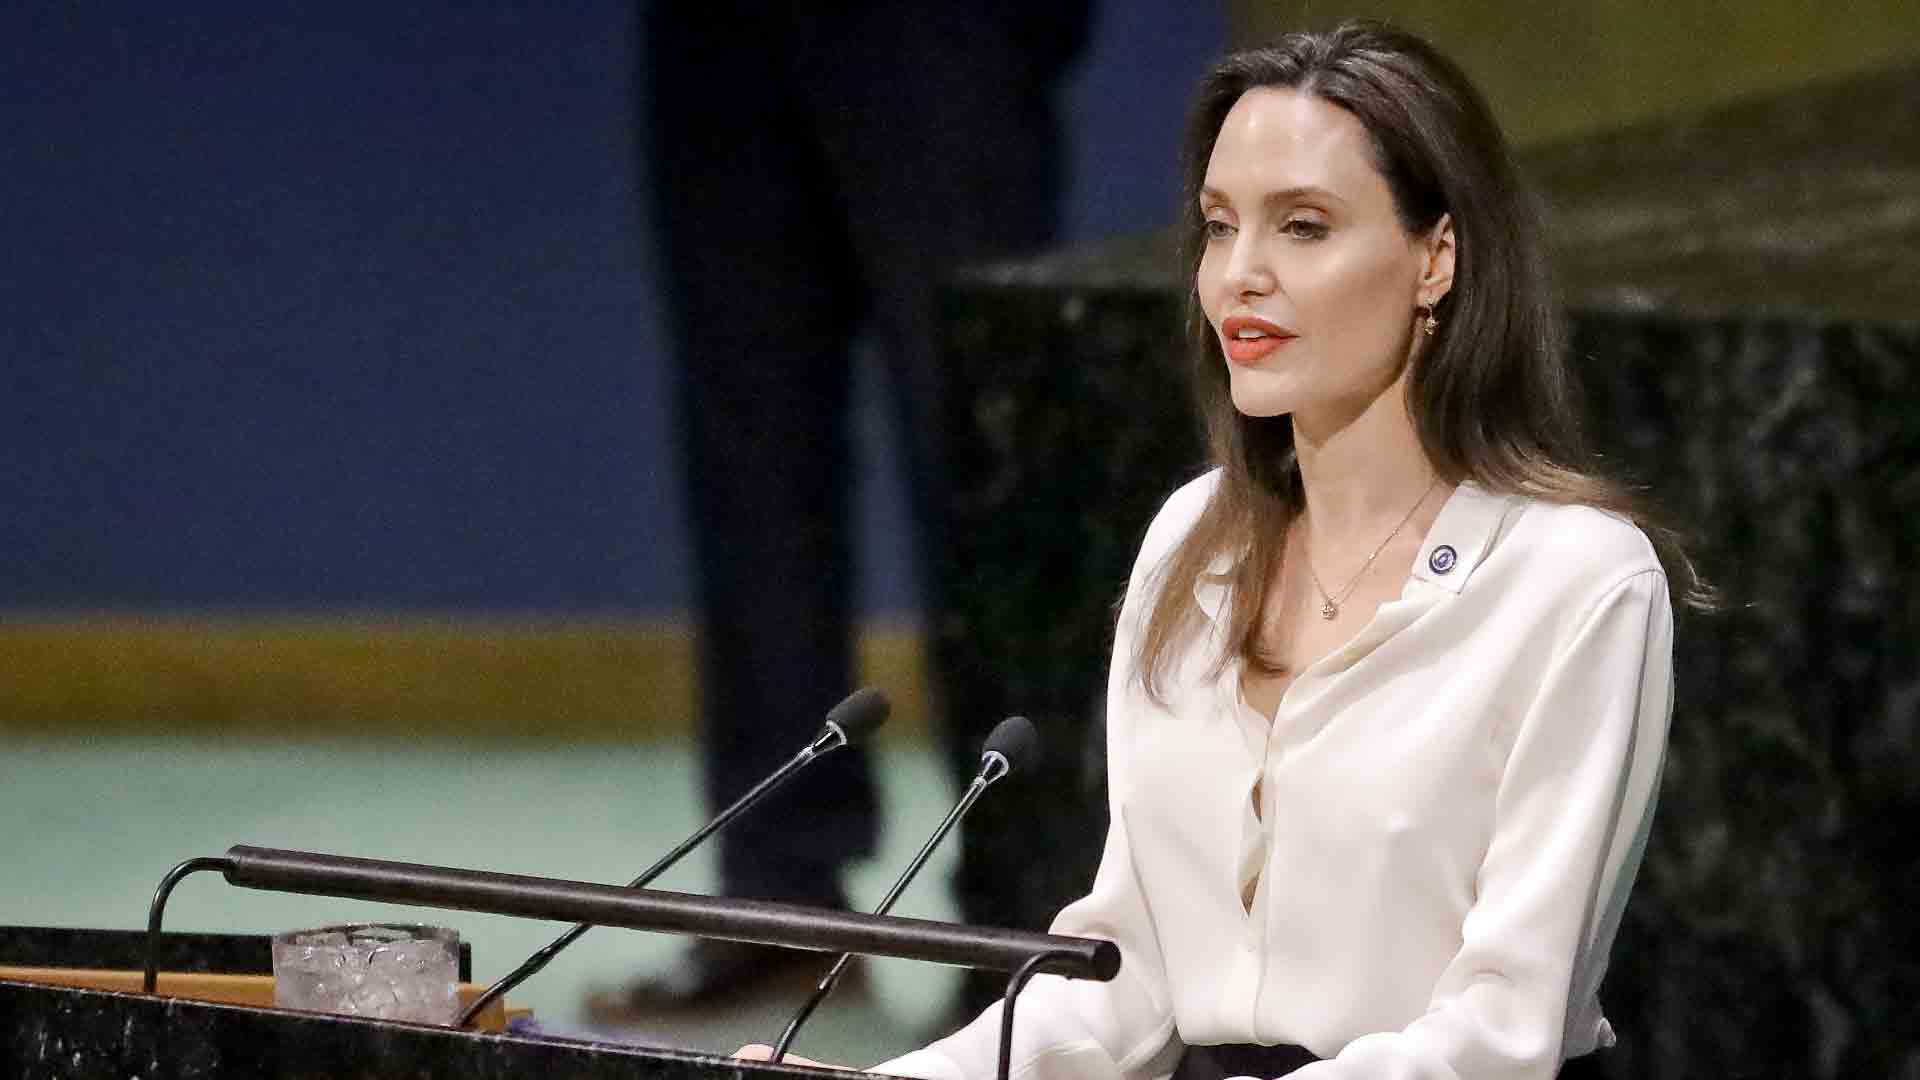 Angelina Jolie en la campaña de Louis Vuitton y su supuesto no maquillaje